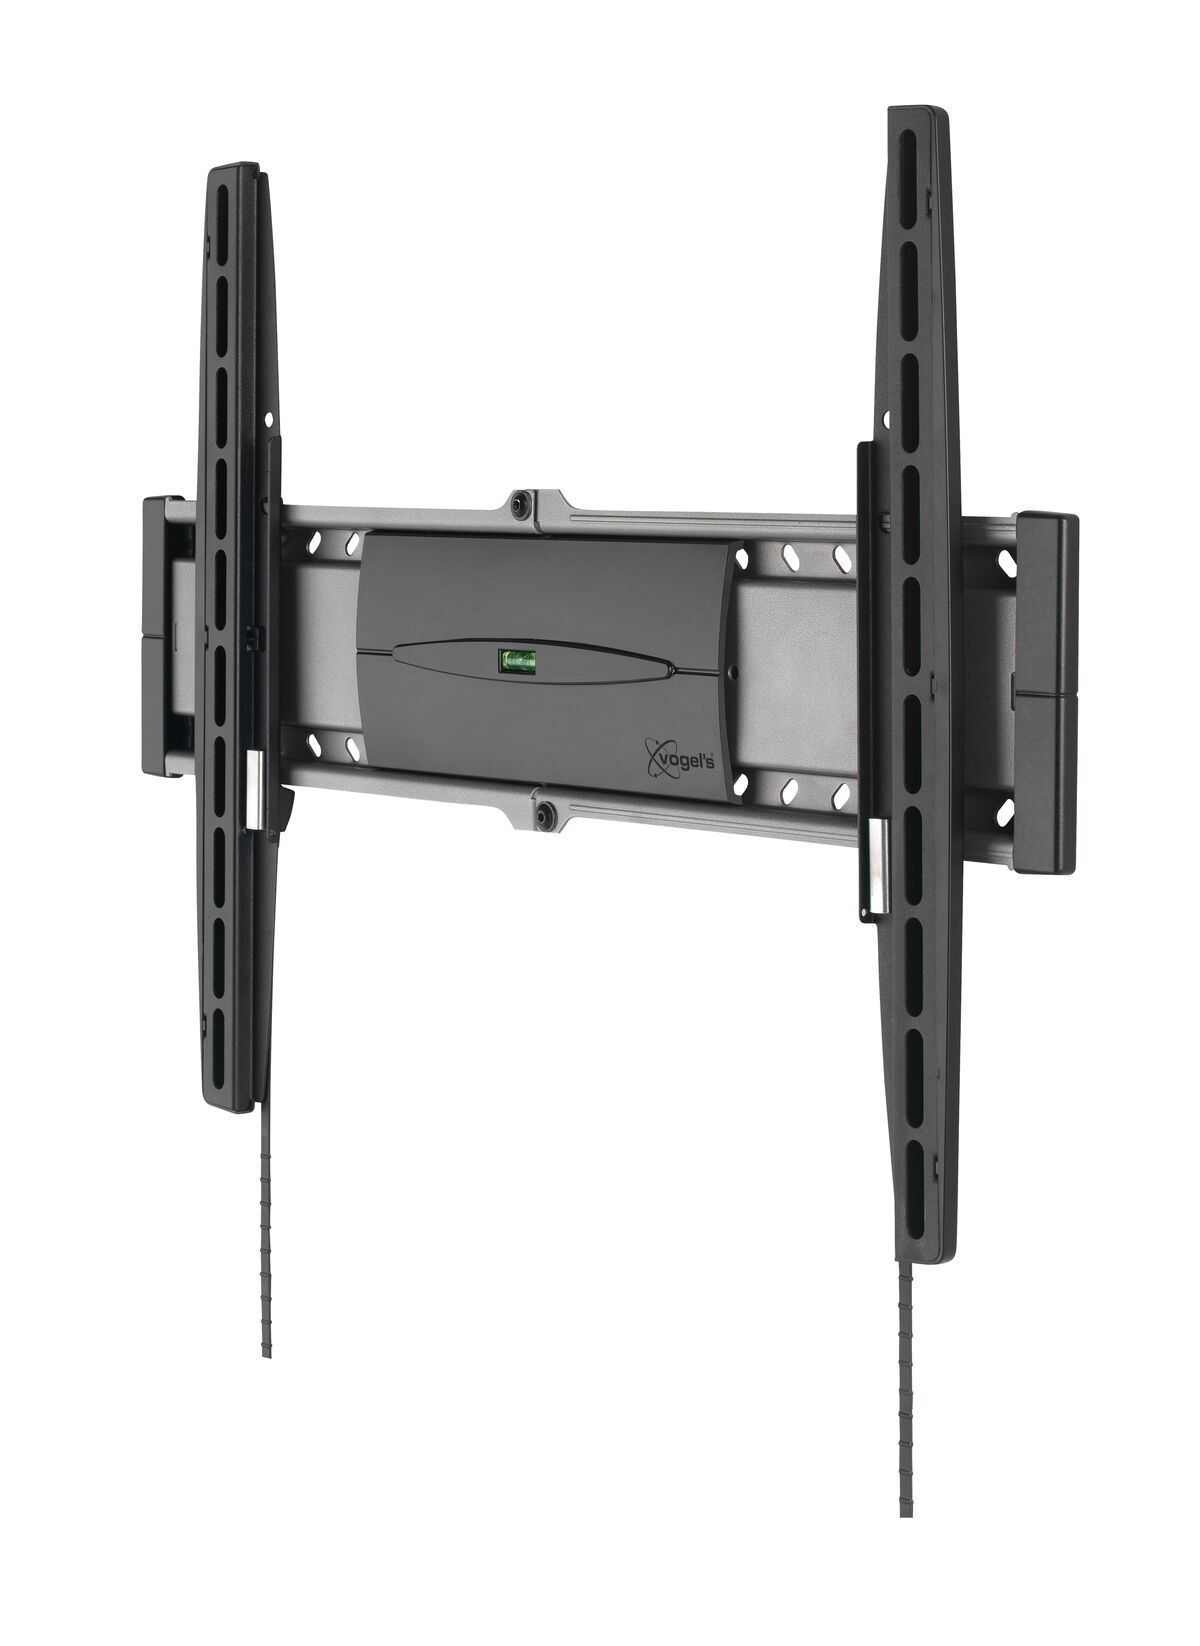 Vogel's EFW 8206 Flache TV-Wandhalterung - Geeignet für Fernseher von 32 bis 55 Zoll und einem Gewicht bis zu 30 kg - Product